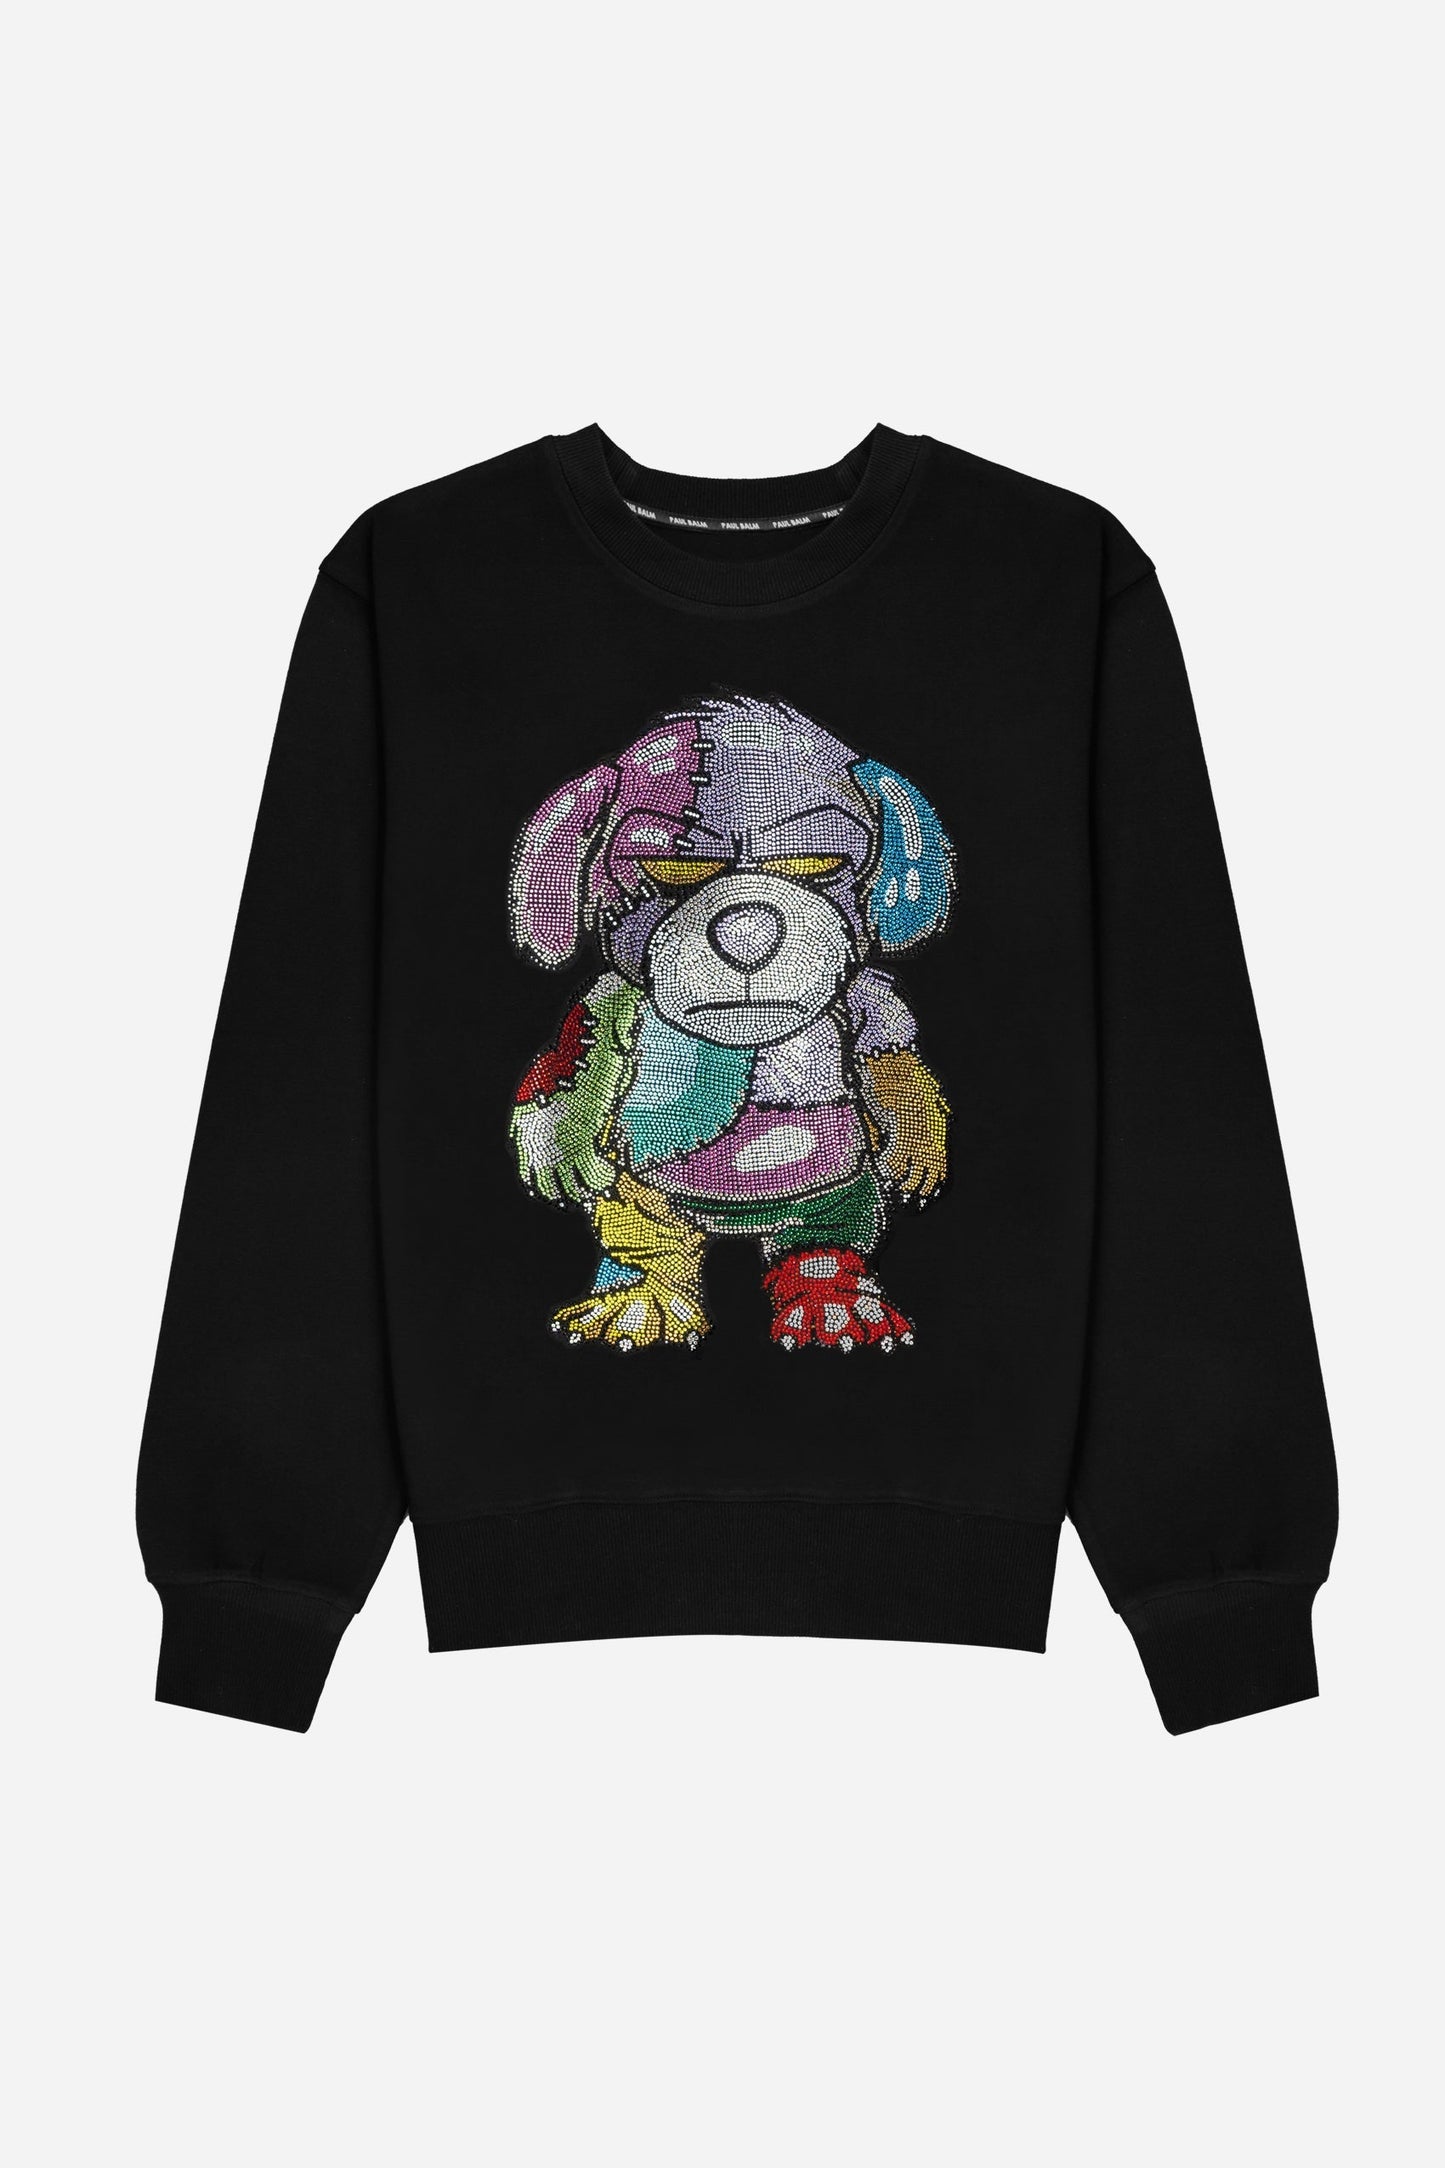 Crystal Rainbow Teddy Sweatshirt - Limited to 300